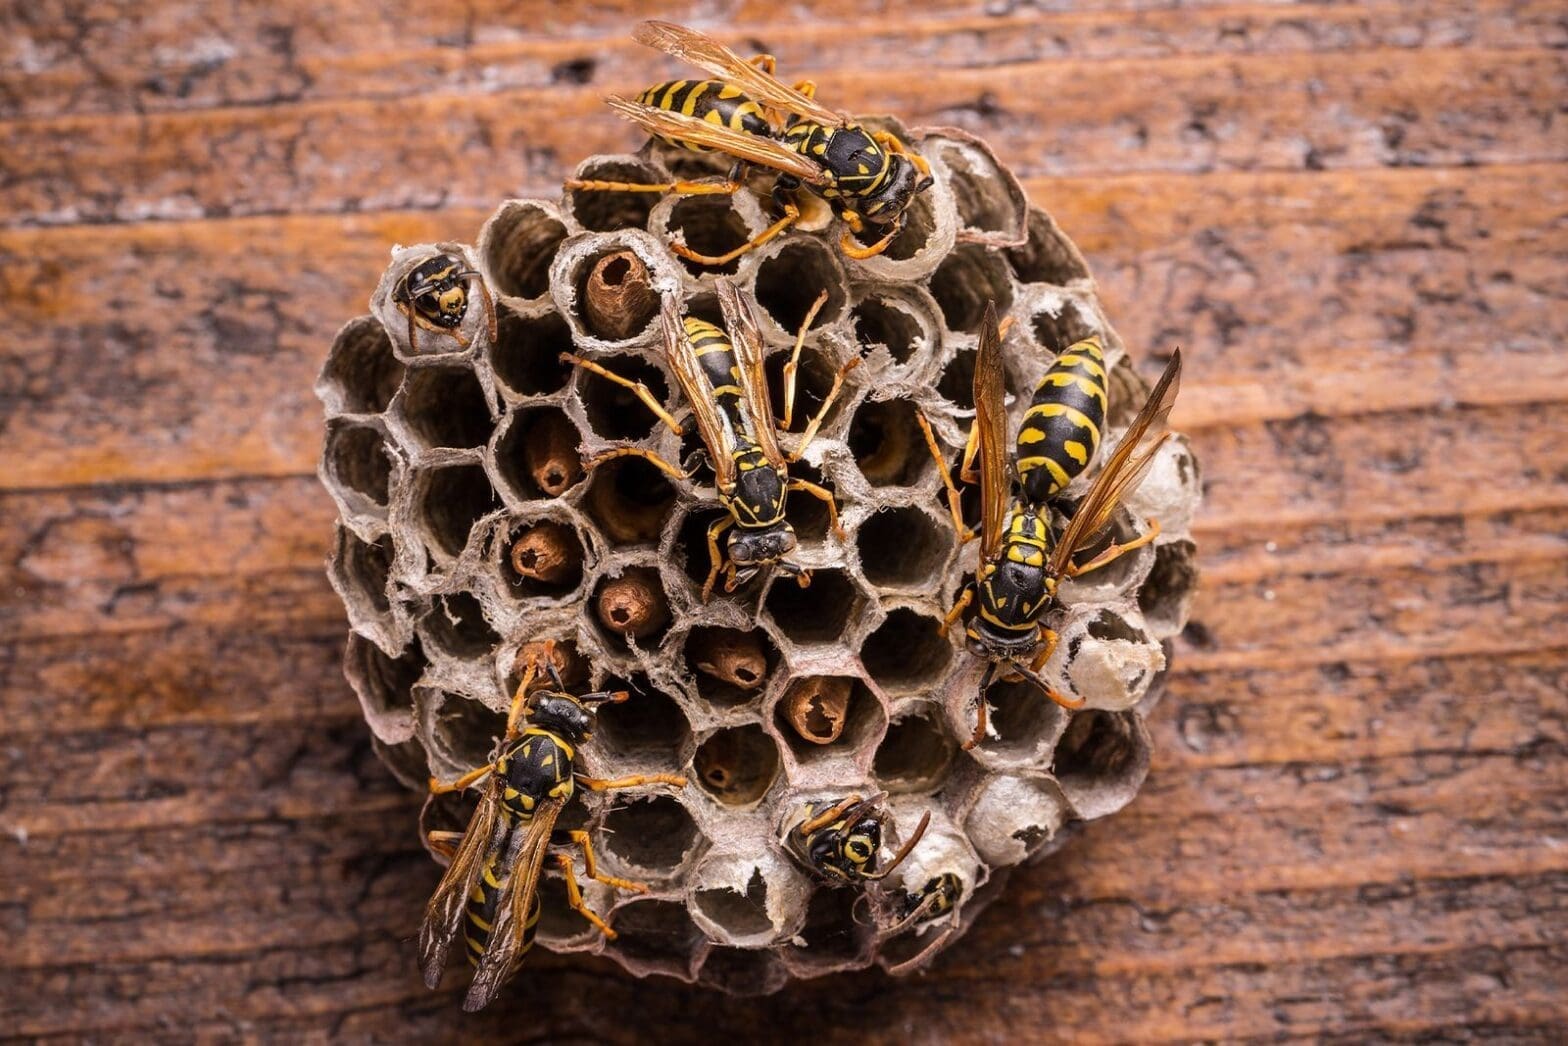 Texas. Oklahoma, Mississippi, Louisiana Wasps